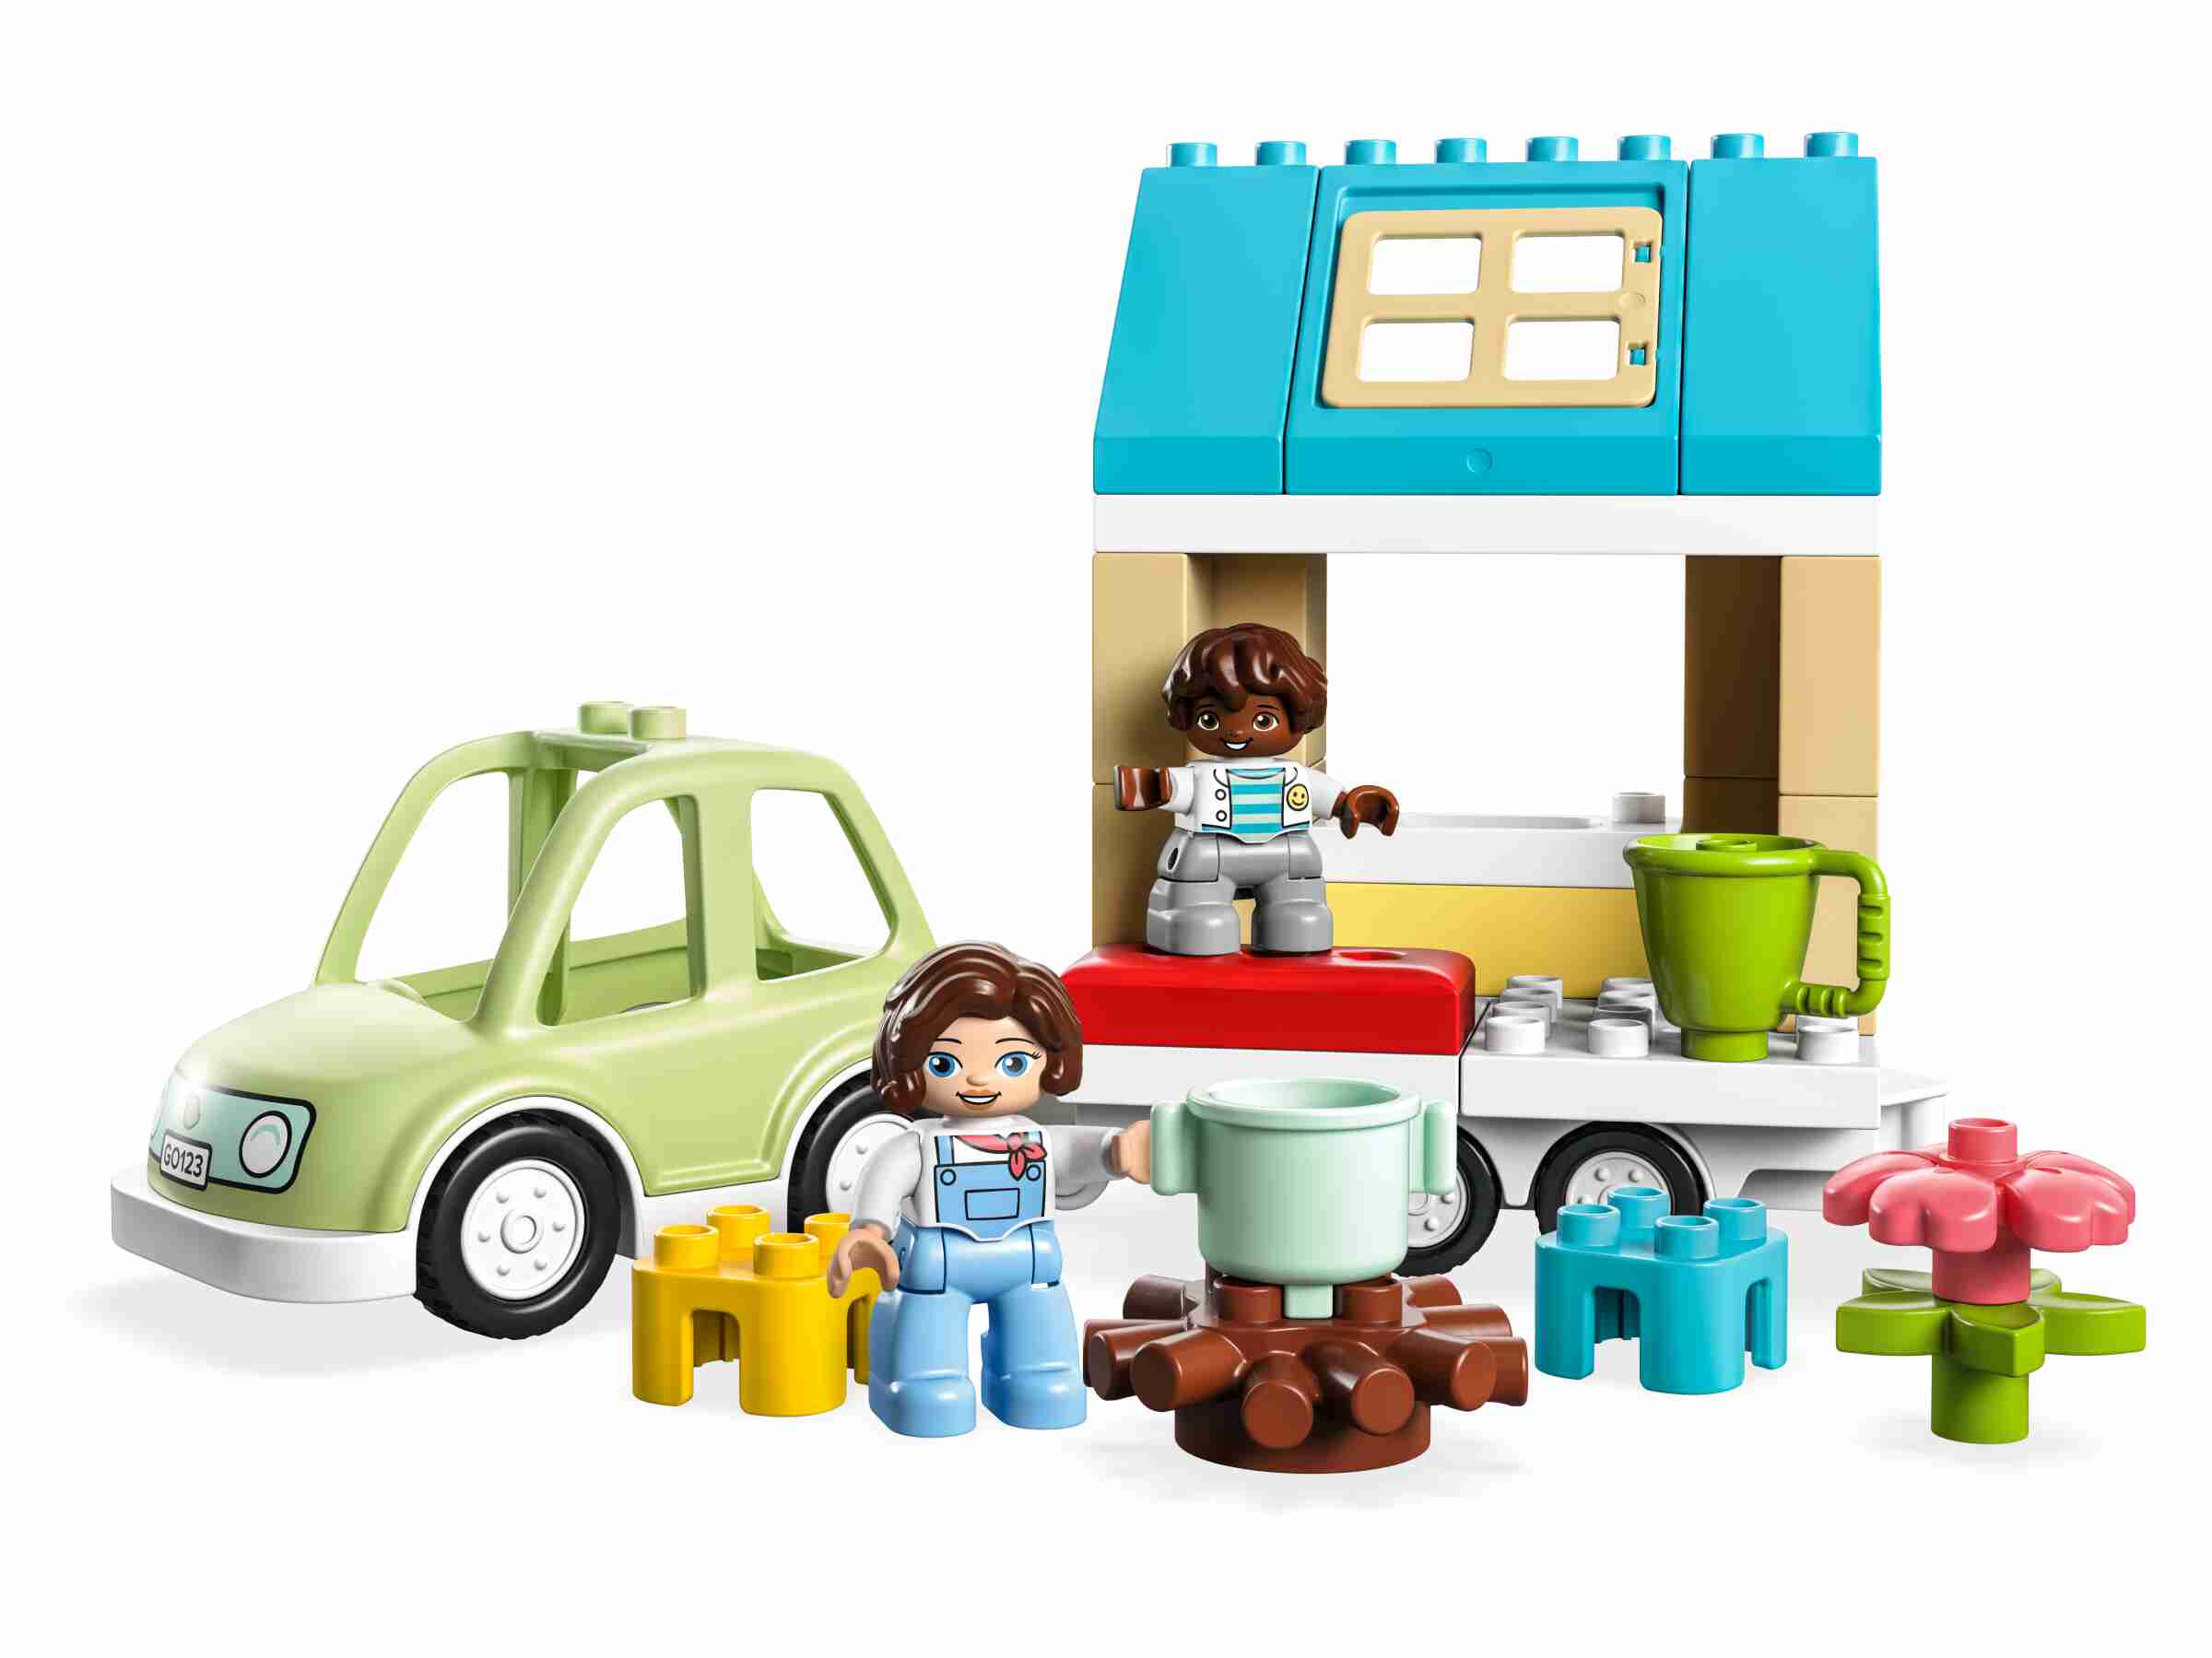 LEGO 10986 DUPLO Zuhause auf Rädern, Wohnwagen, Auto, Camping, 2 Figuren